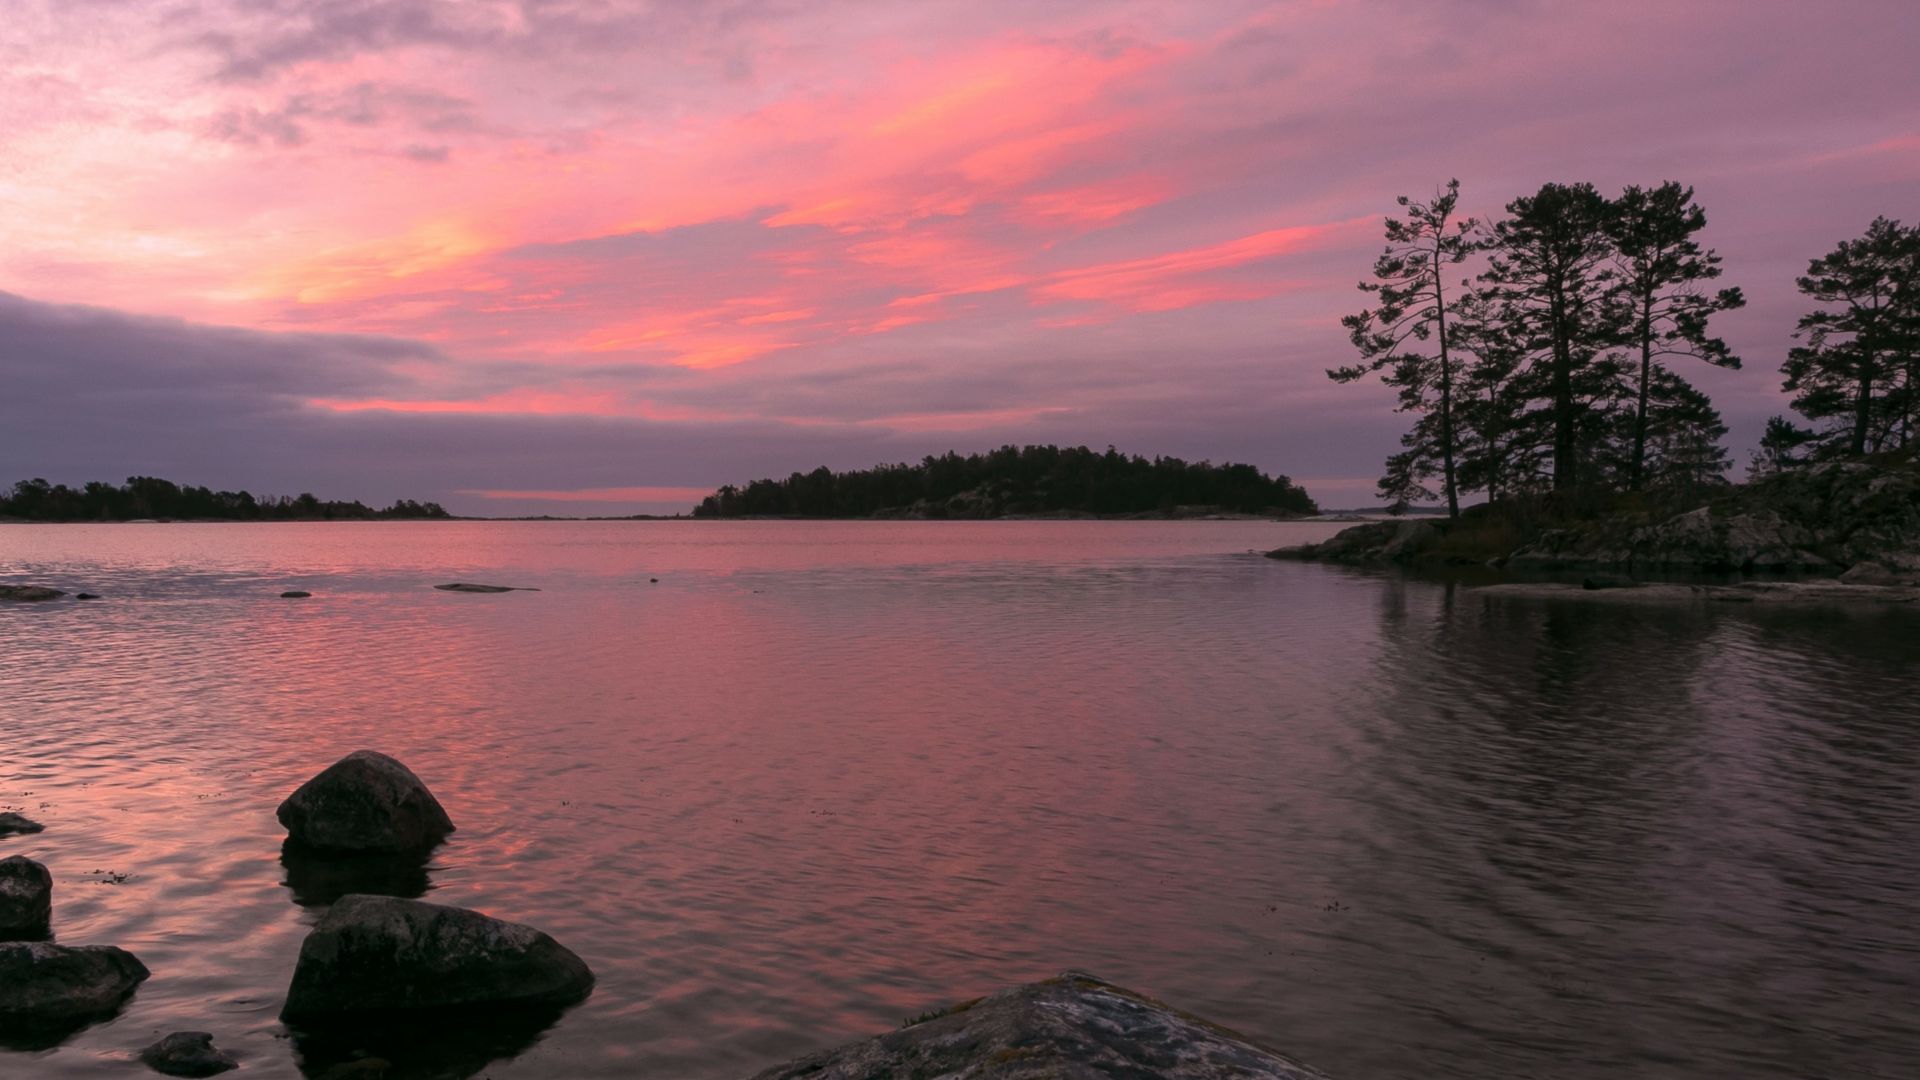 Udsigt over den stenede kyst af en sø i Västerviks skærgård med øer dækket af træer under en lyserød solnedgang